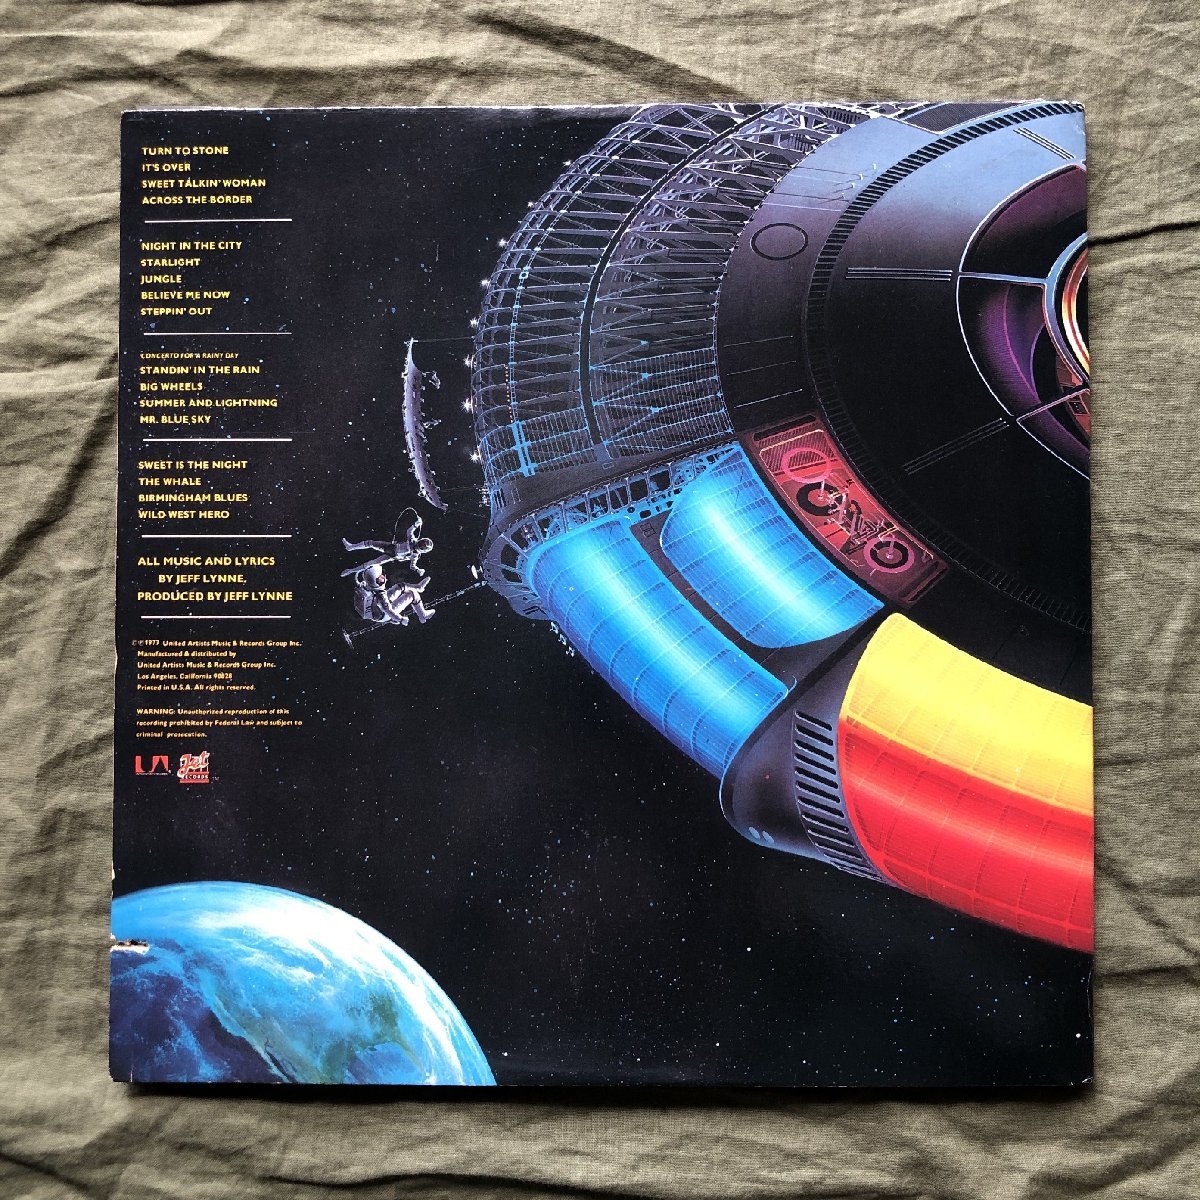 良盤 1977年 米国盤 Electric Light Orchestra (ELO) 2枚組LPレコード Out Of The Blue: Jeff Lynn, Turn To Stone レア グッズ広告付_画像2